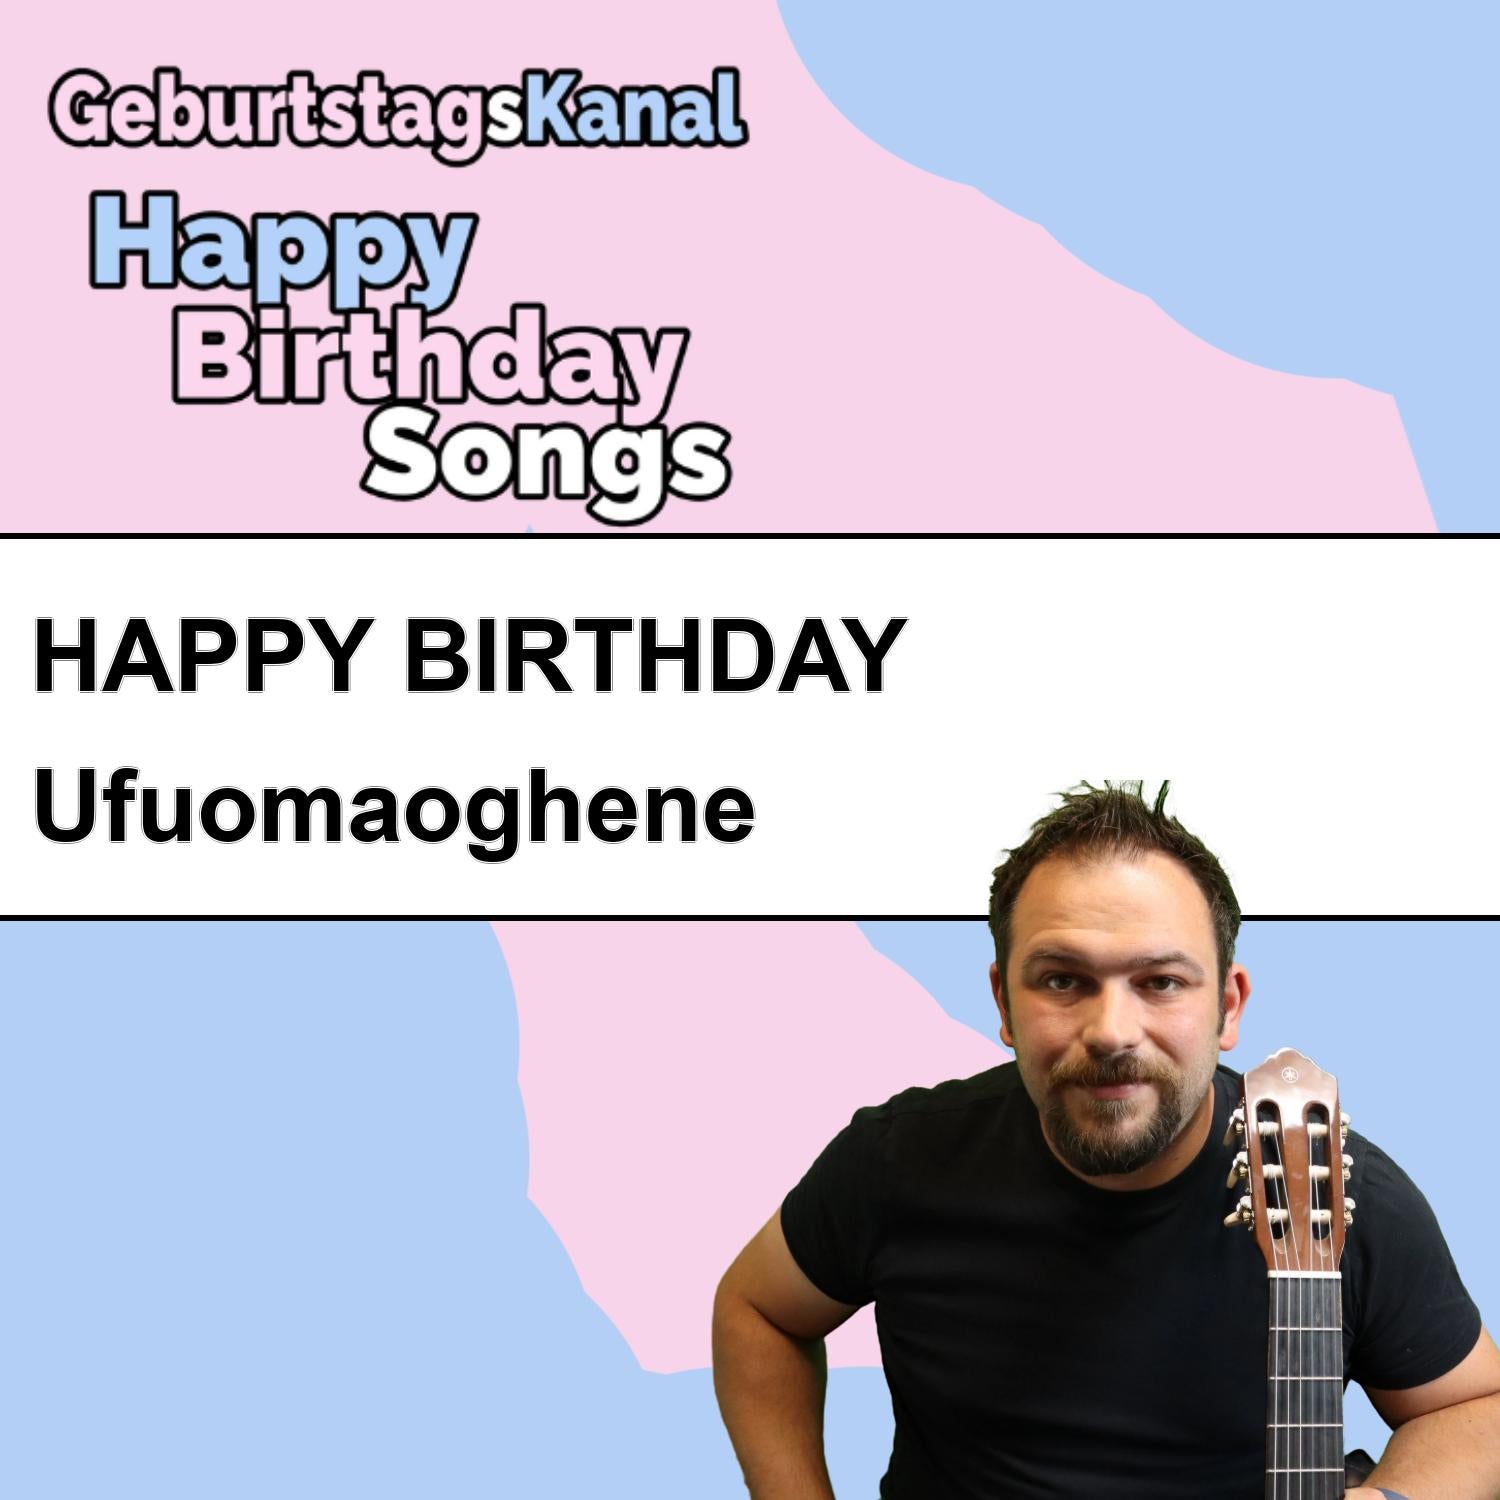 Produktbild Happy Birthday to you Ufuomaoghene mit Wunschgrußbotschaft